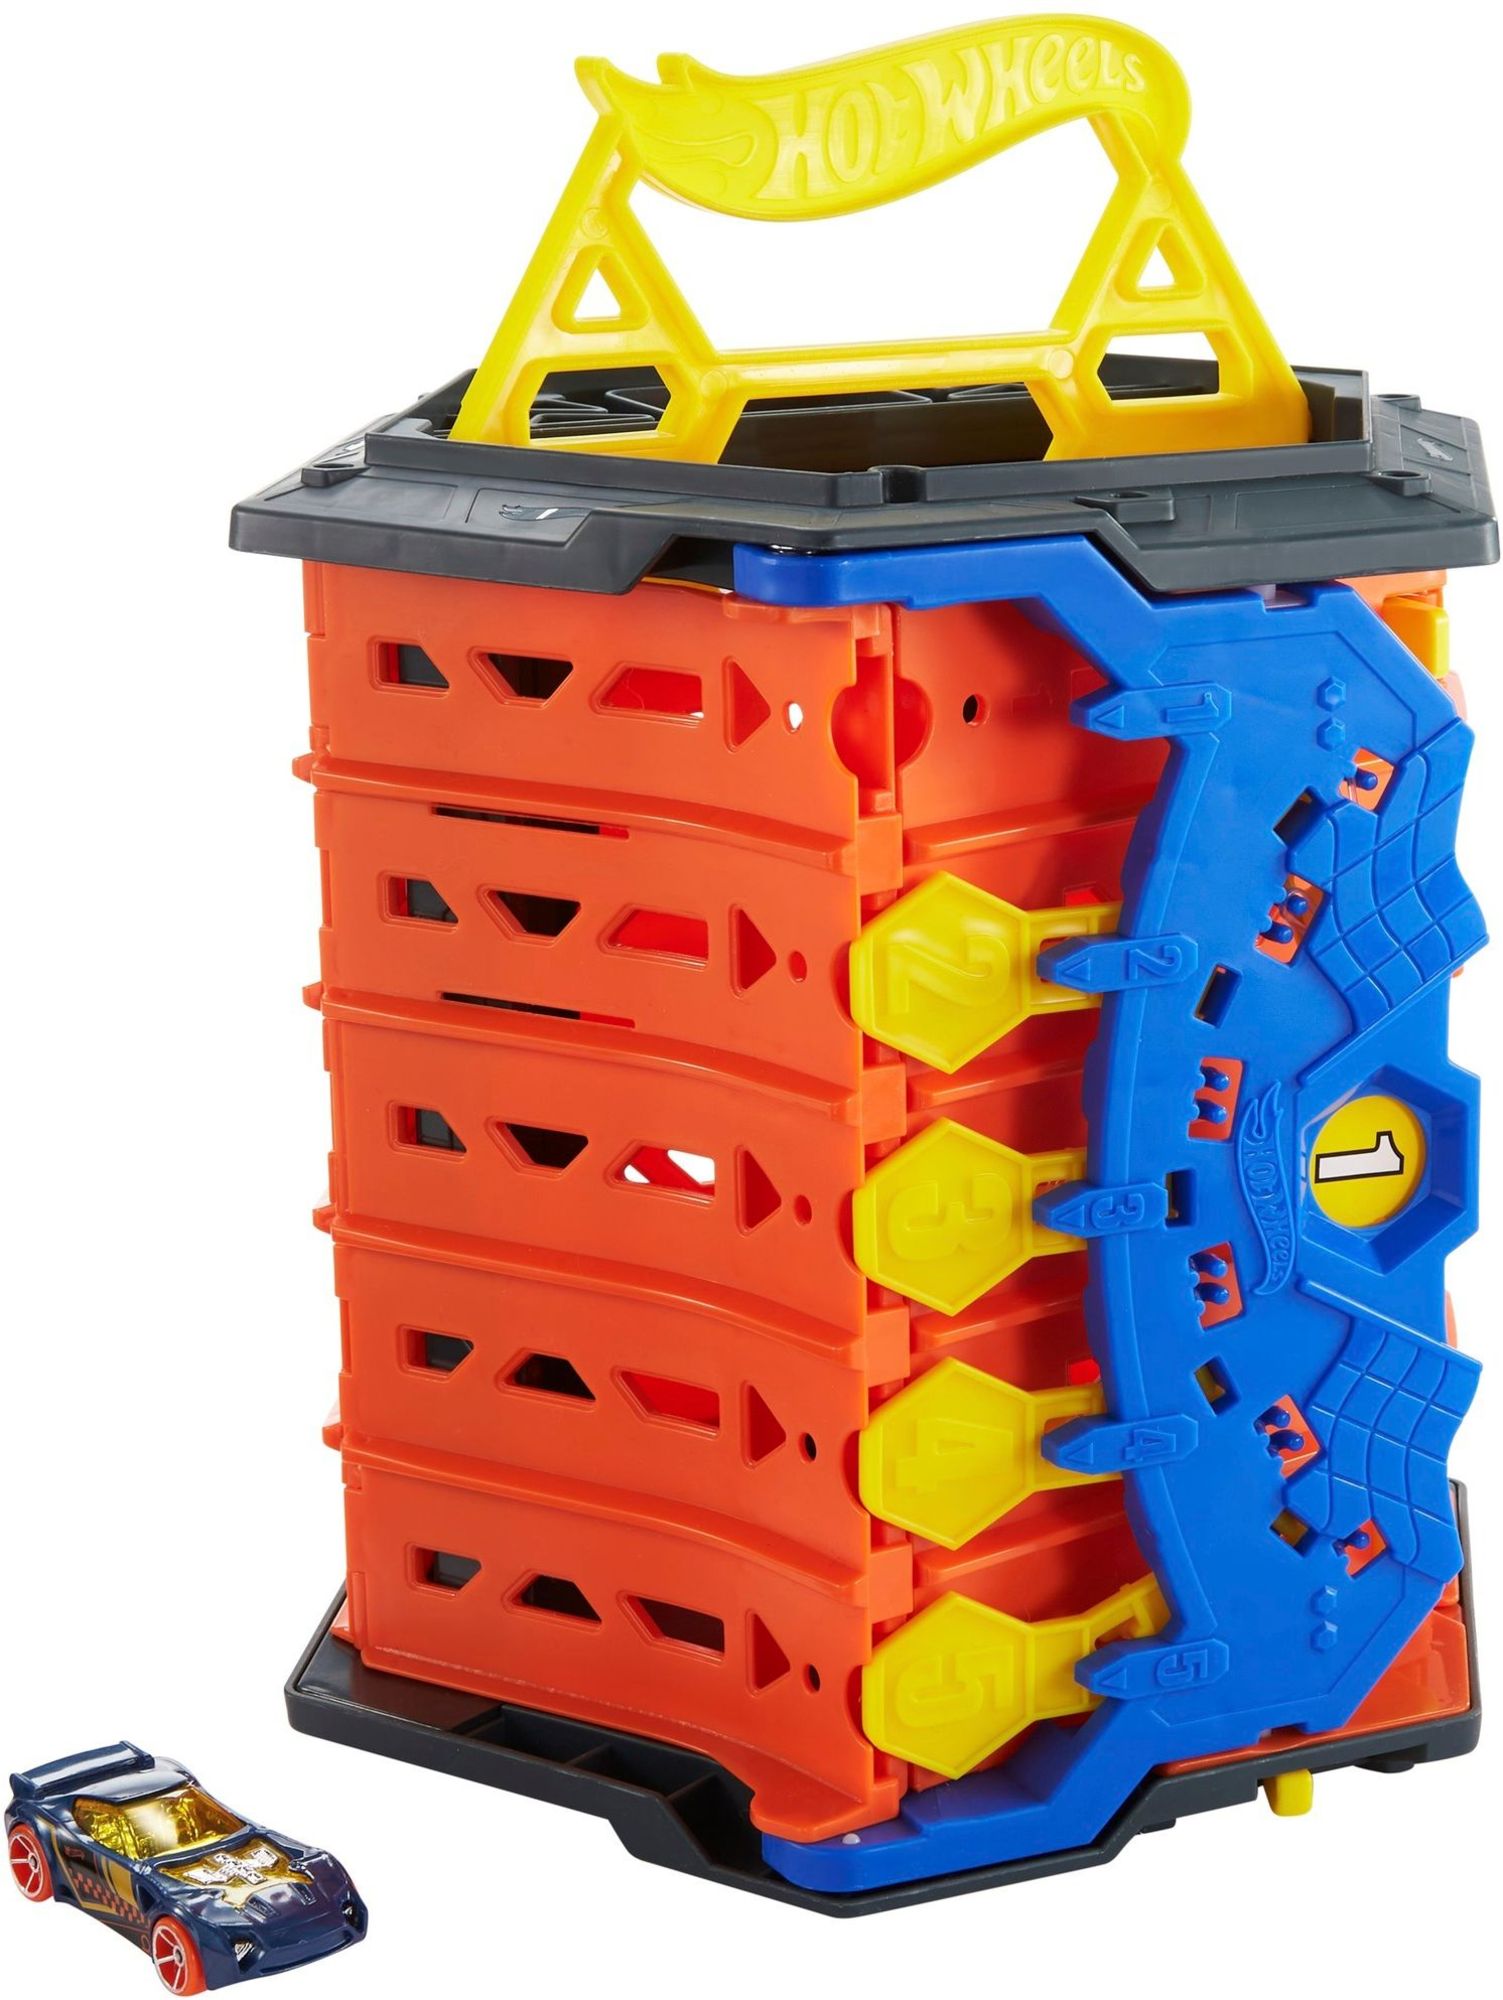 Hot Wheels - 2in1 Spielset & Box inkl. 1 Spielzeugauto' kaufen - Spielwaren